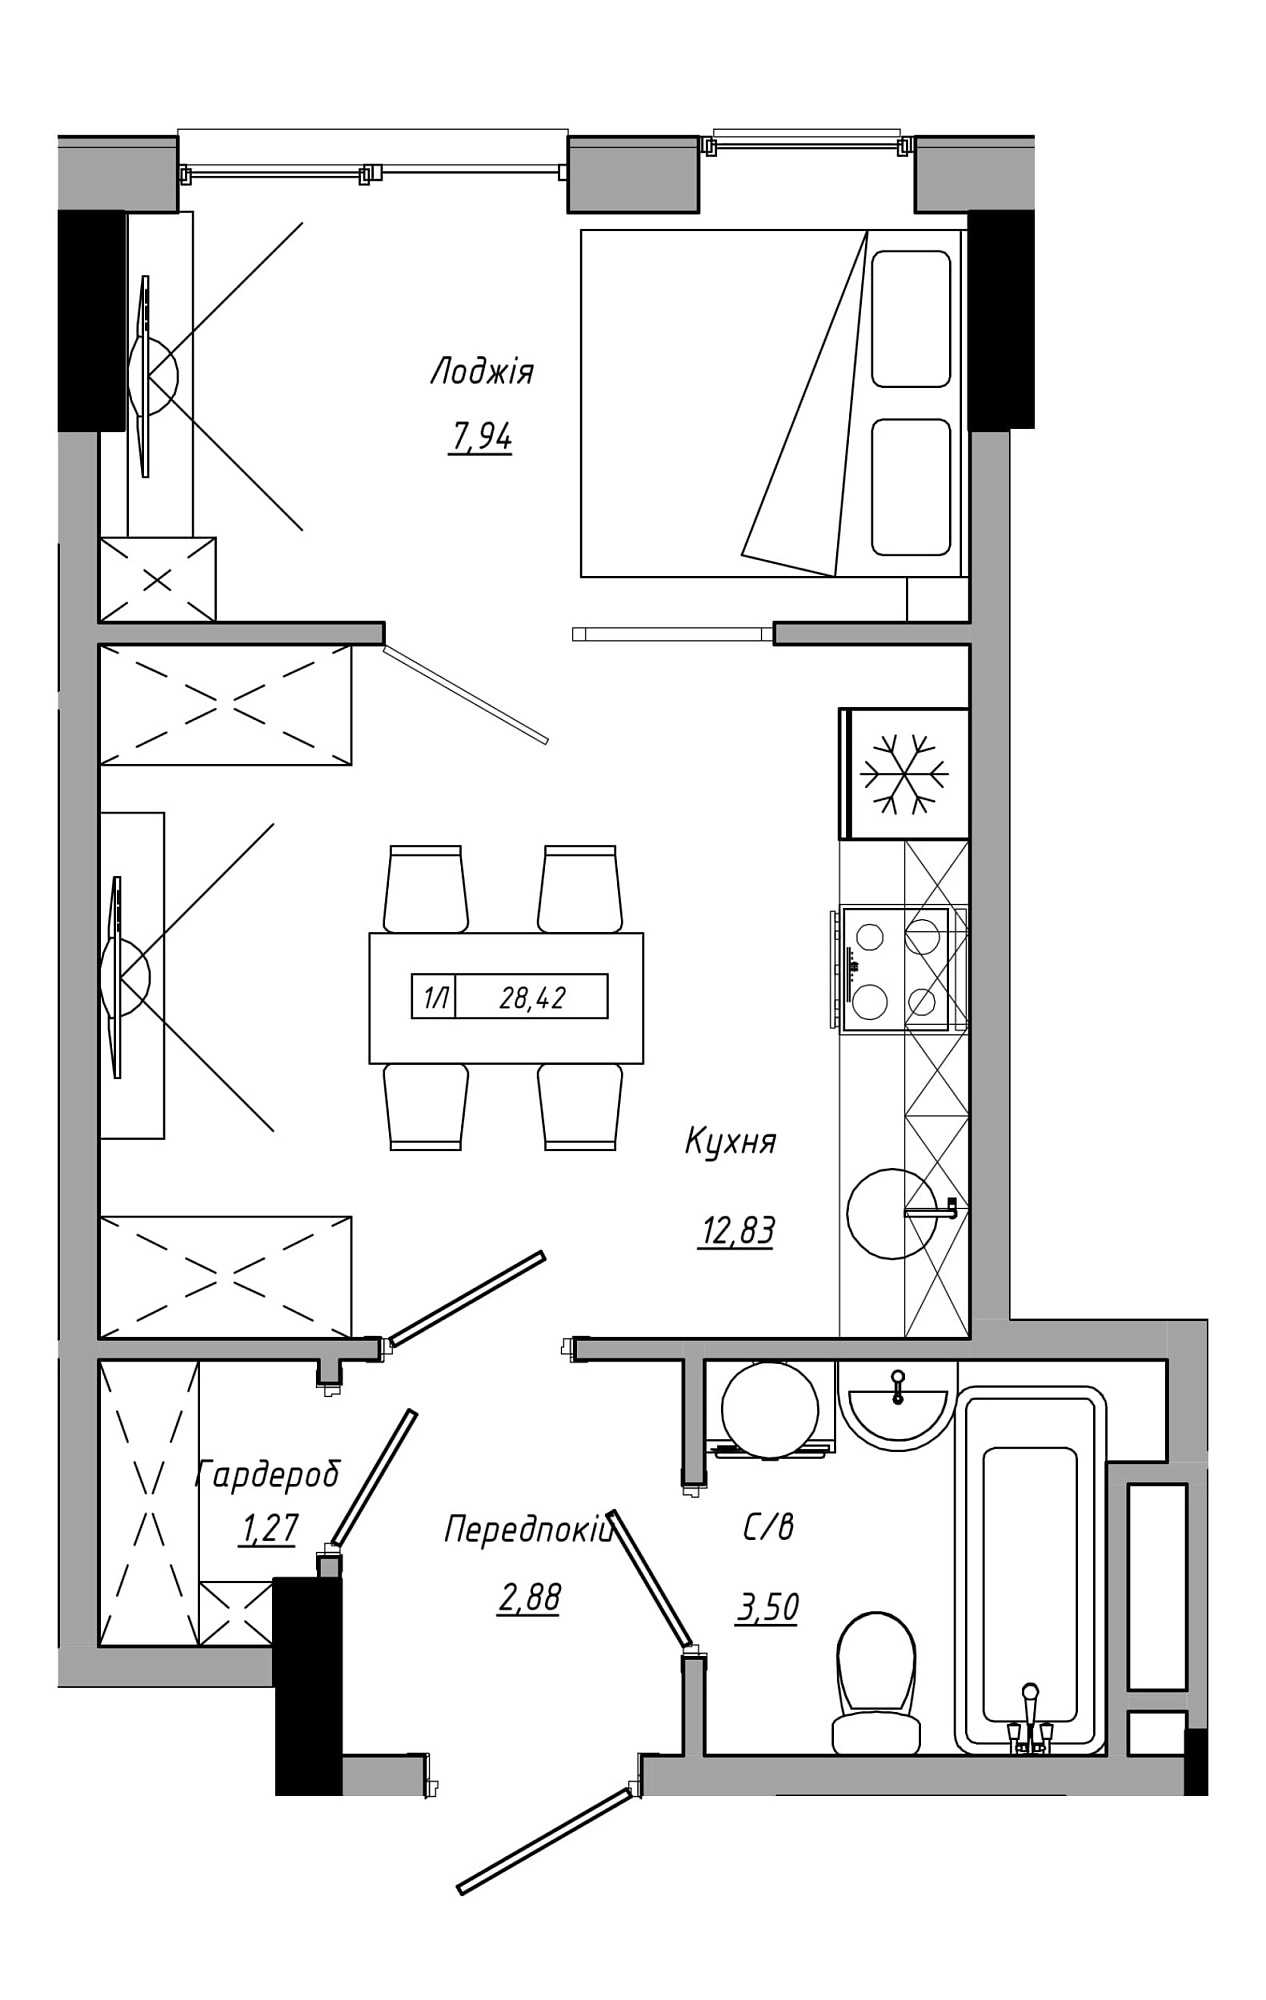 Планировка 1-к квартира площей 28.42м2, AB-21-06/00014.